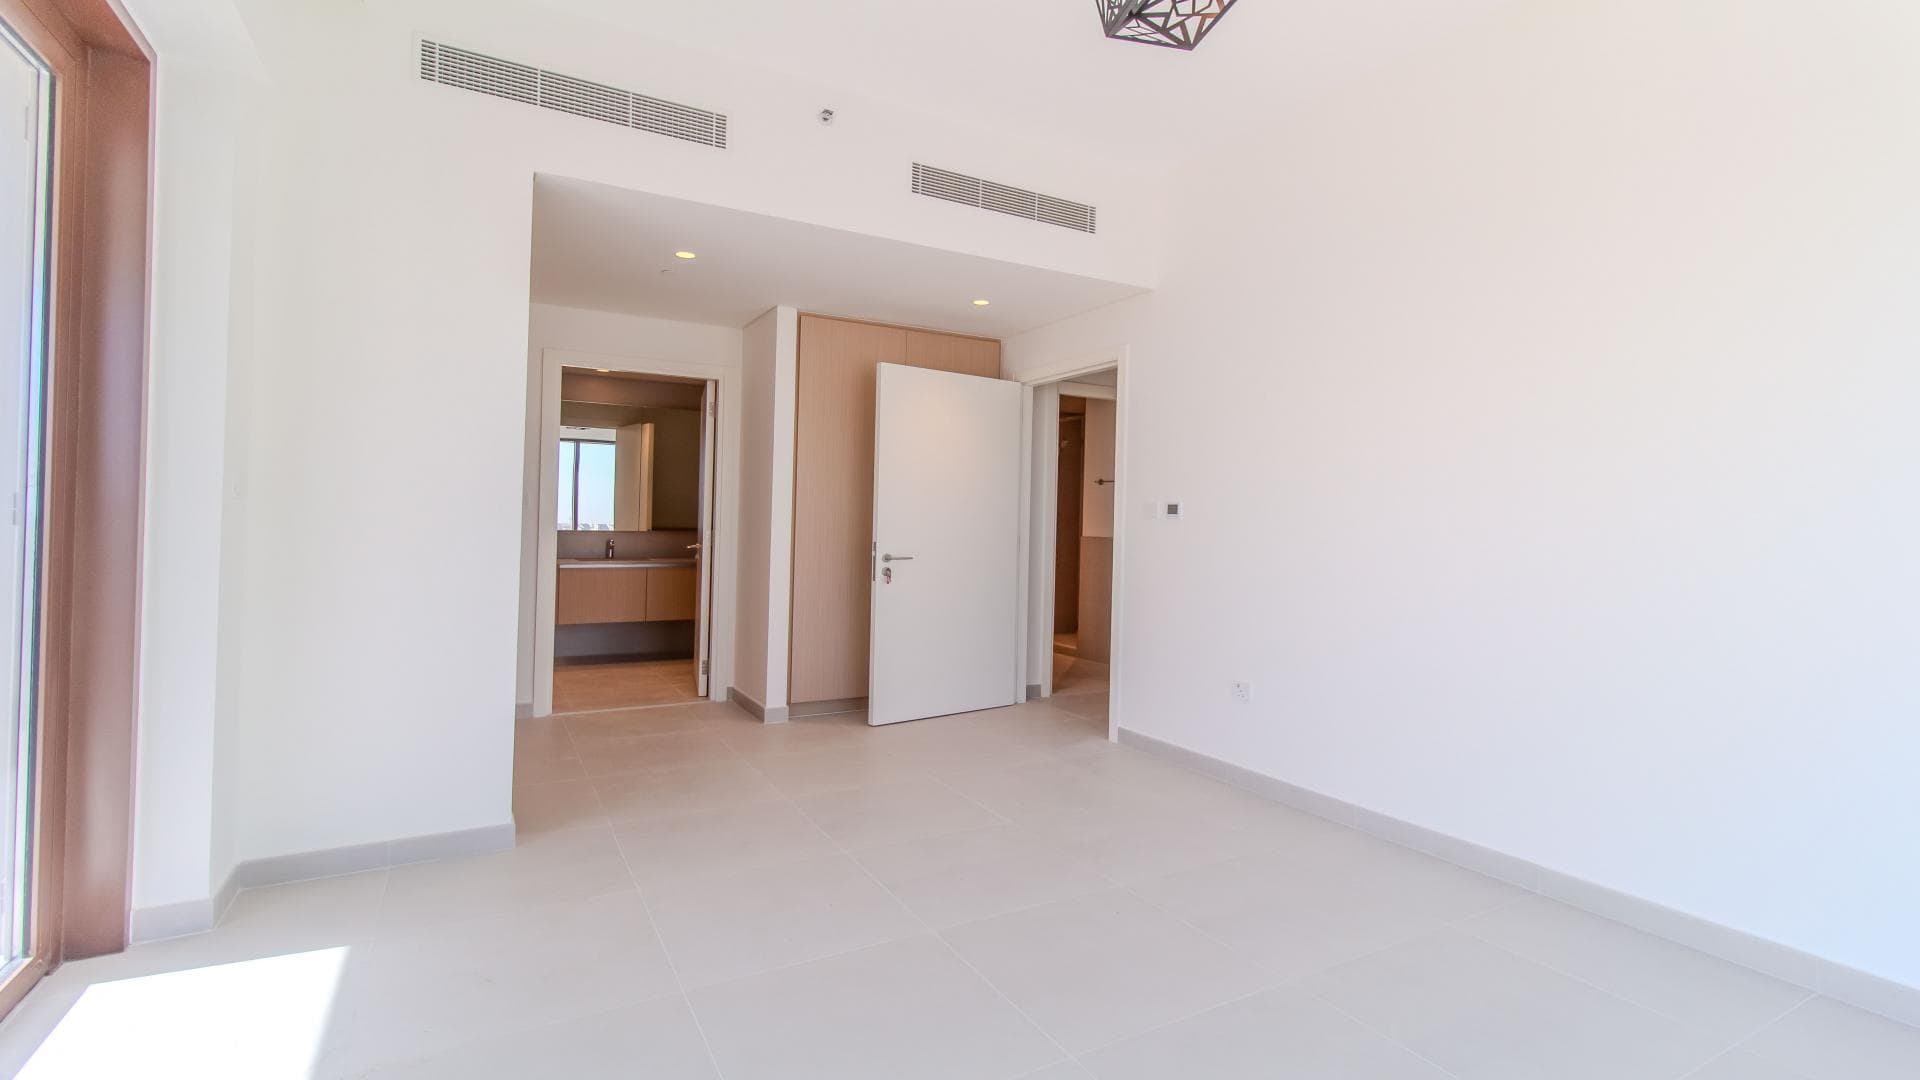 3 Bedroom Apartment For Rent Al Thamam 29 Lp38144 2c803781380d2e00.jpg